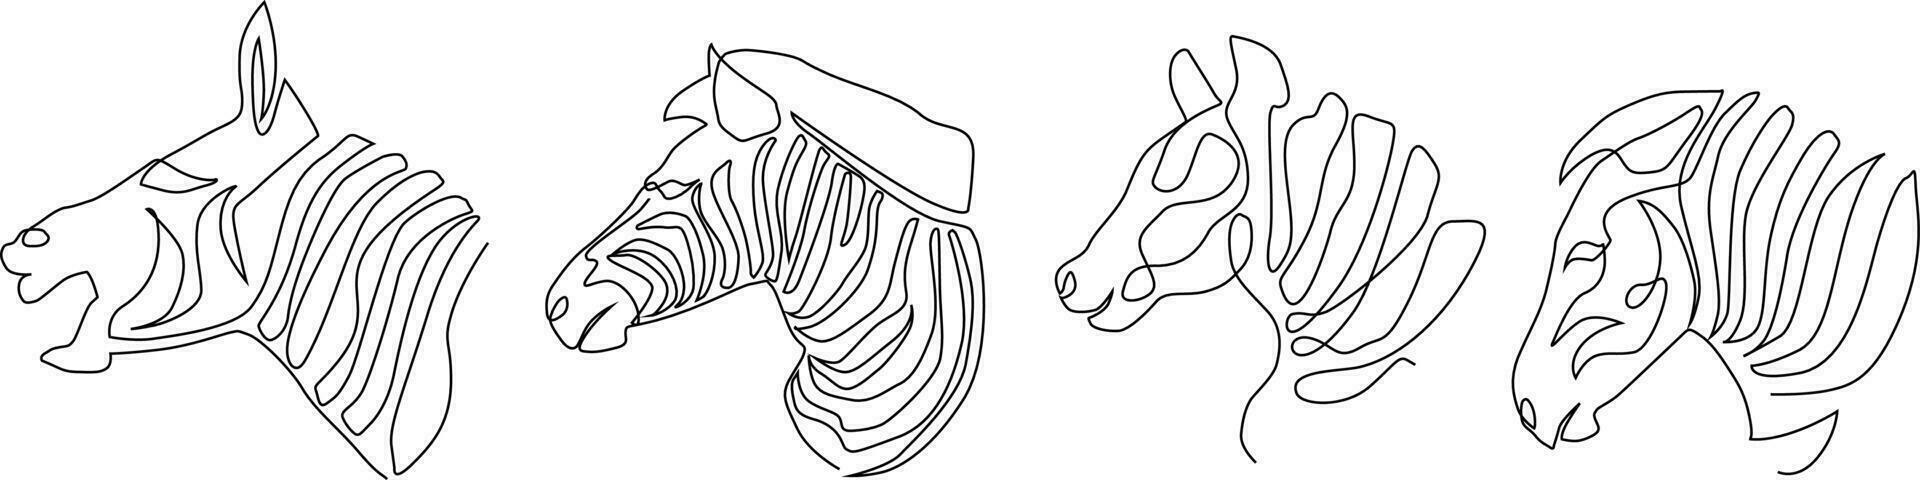 contínuo linha agrupar conjunto zebra cavalo vetor